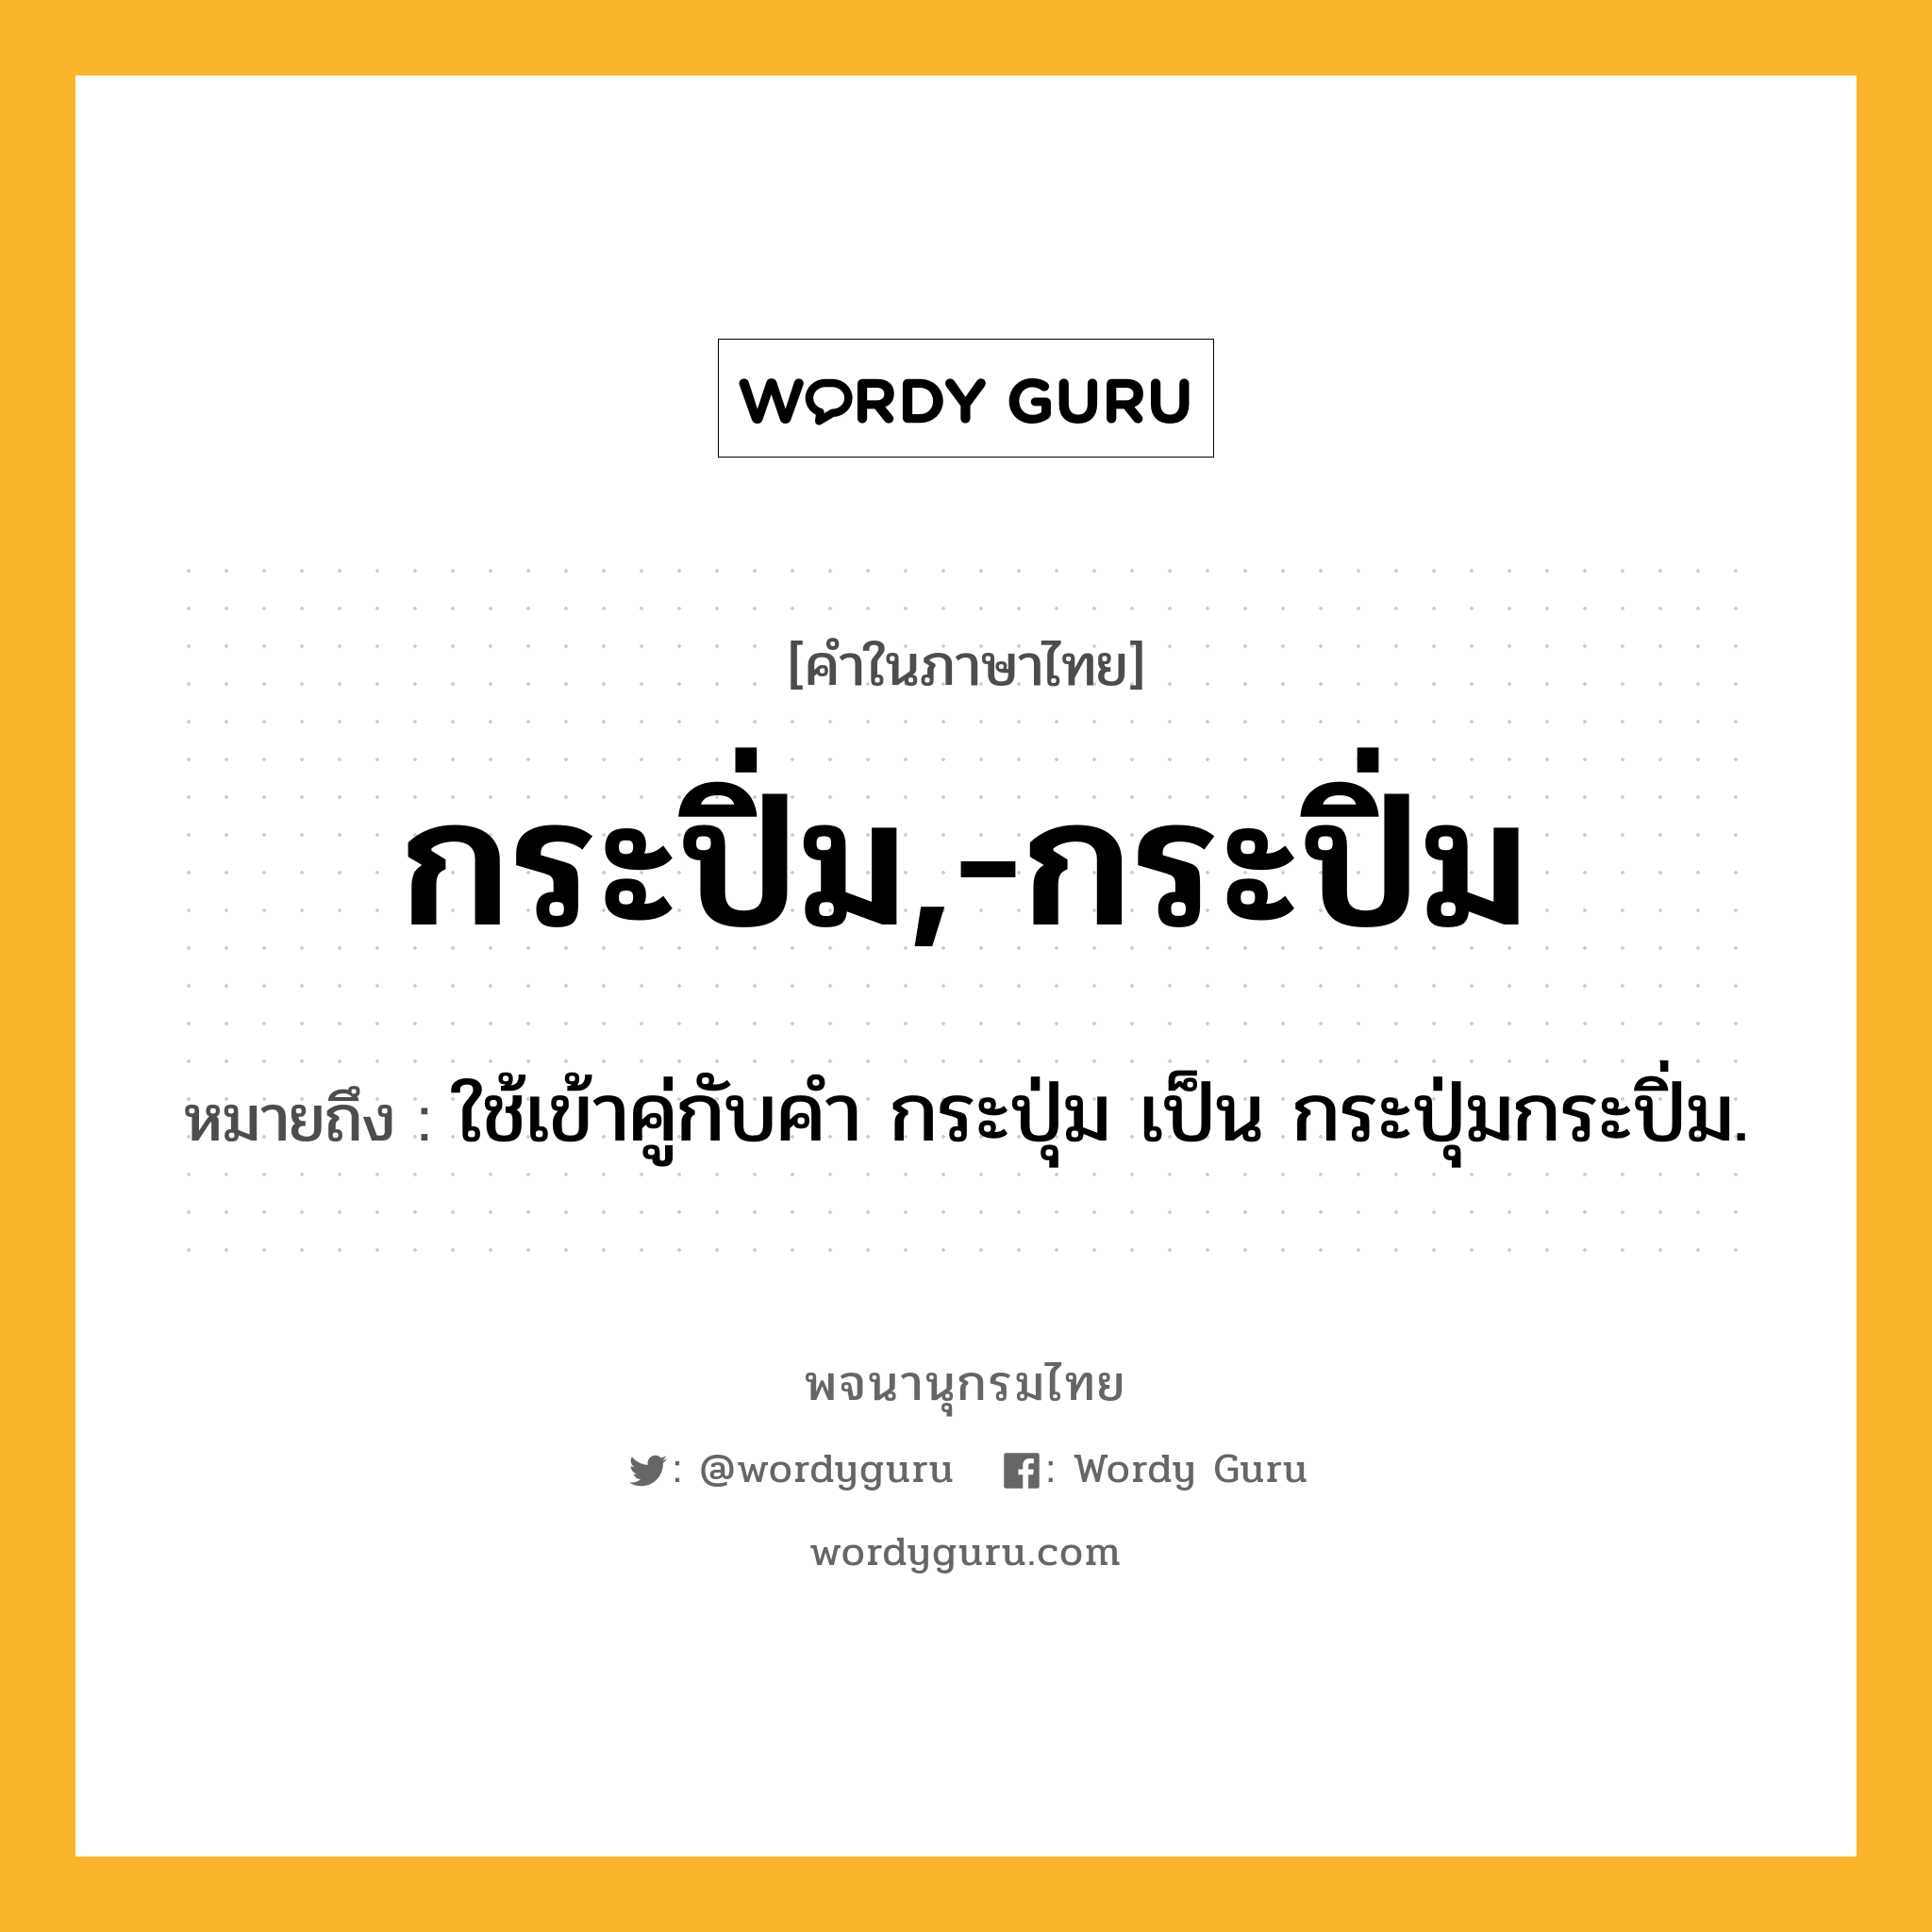 กระปิ่ม,-กระปิ่ม ความหมาย หมายถึงอะไร?, คำในภาษาไทย กระปิ่ม,-กระปิ่ม หมายถึง ใช้เข้าคู่กับคํา กระปุ่ม เป็น กระปุ่มกระปิ่ม.